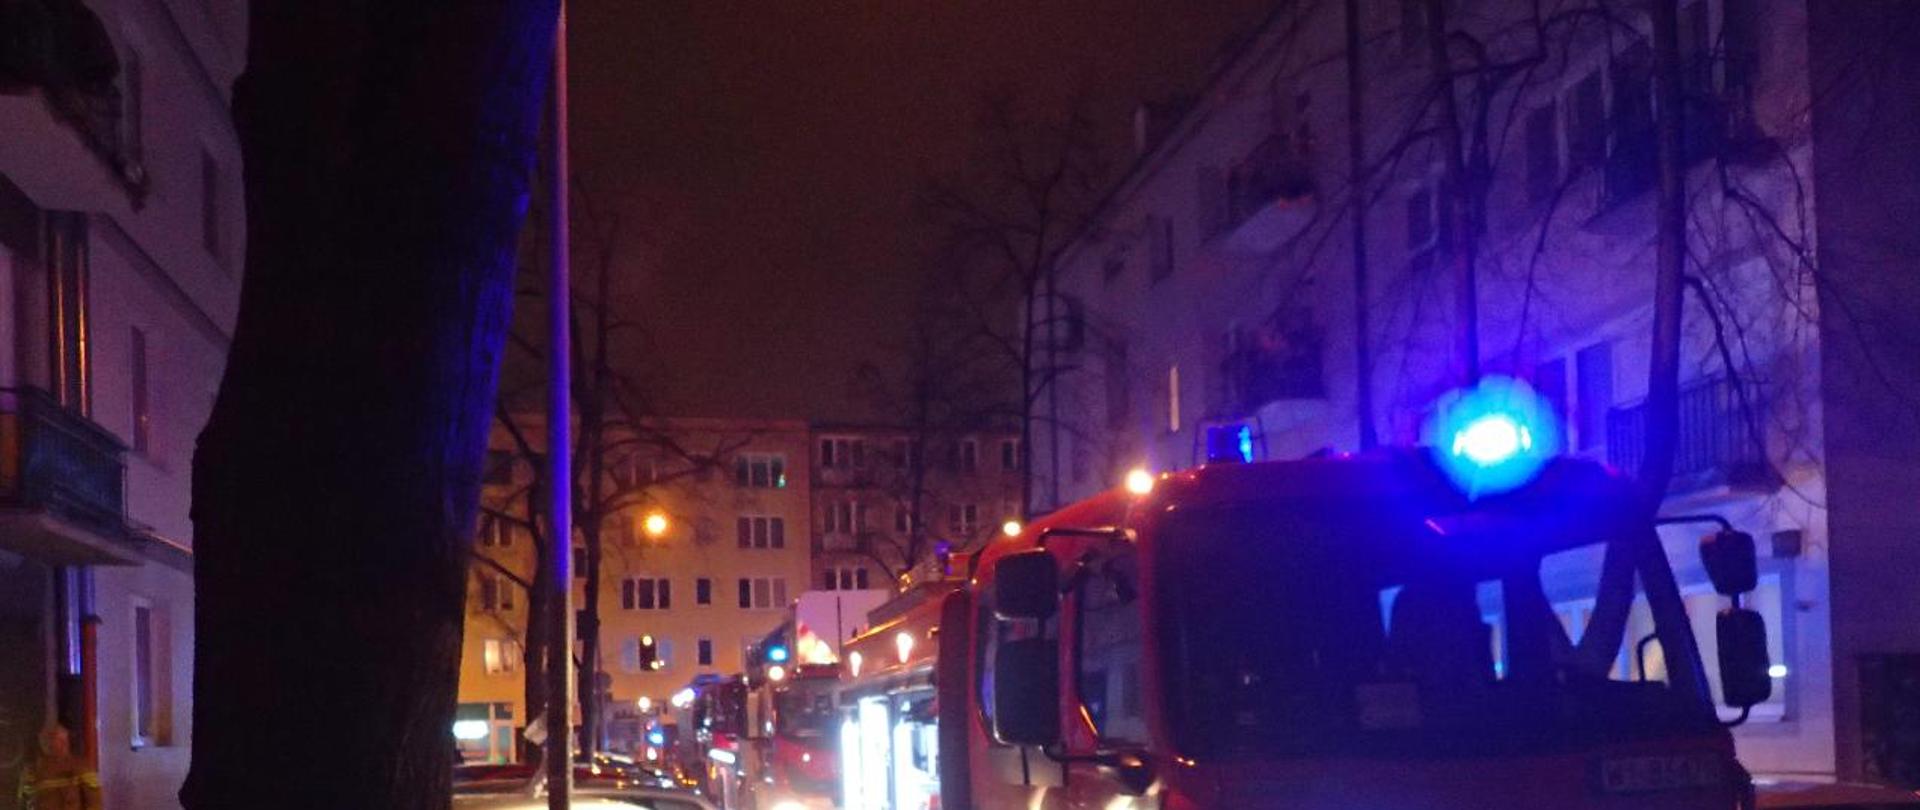 na zdjęciu widać trzy samochody straży pożarnej stojące na ulicy z włączonymi sygnałami świetlnymi